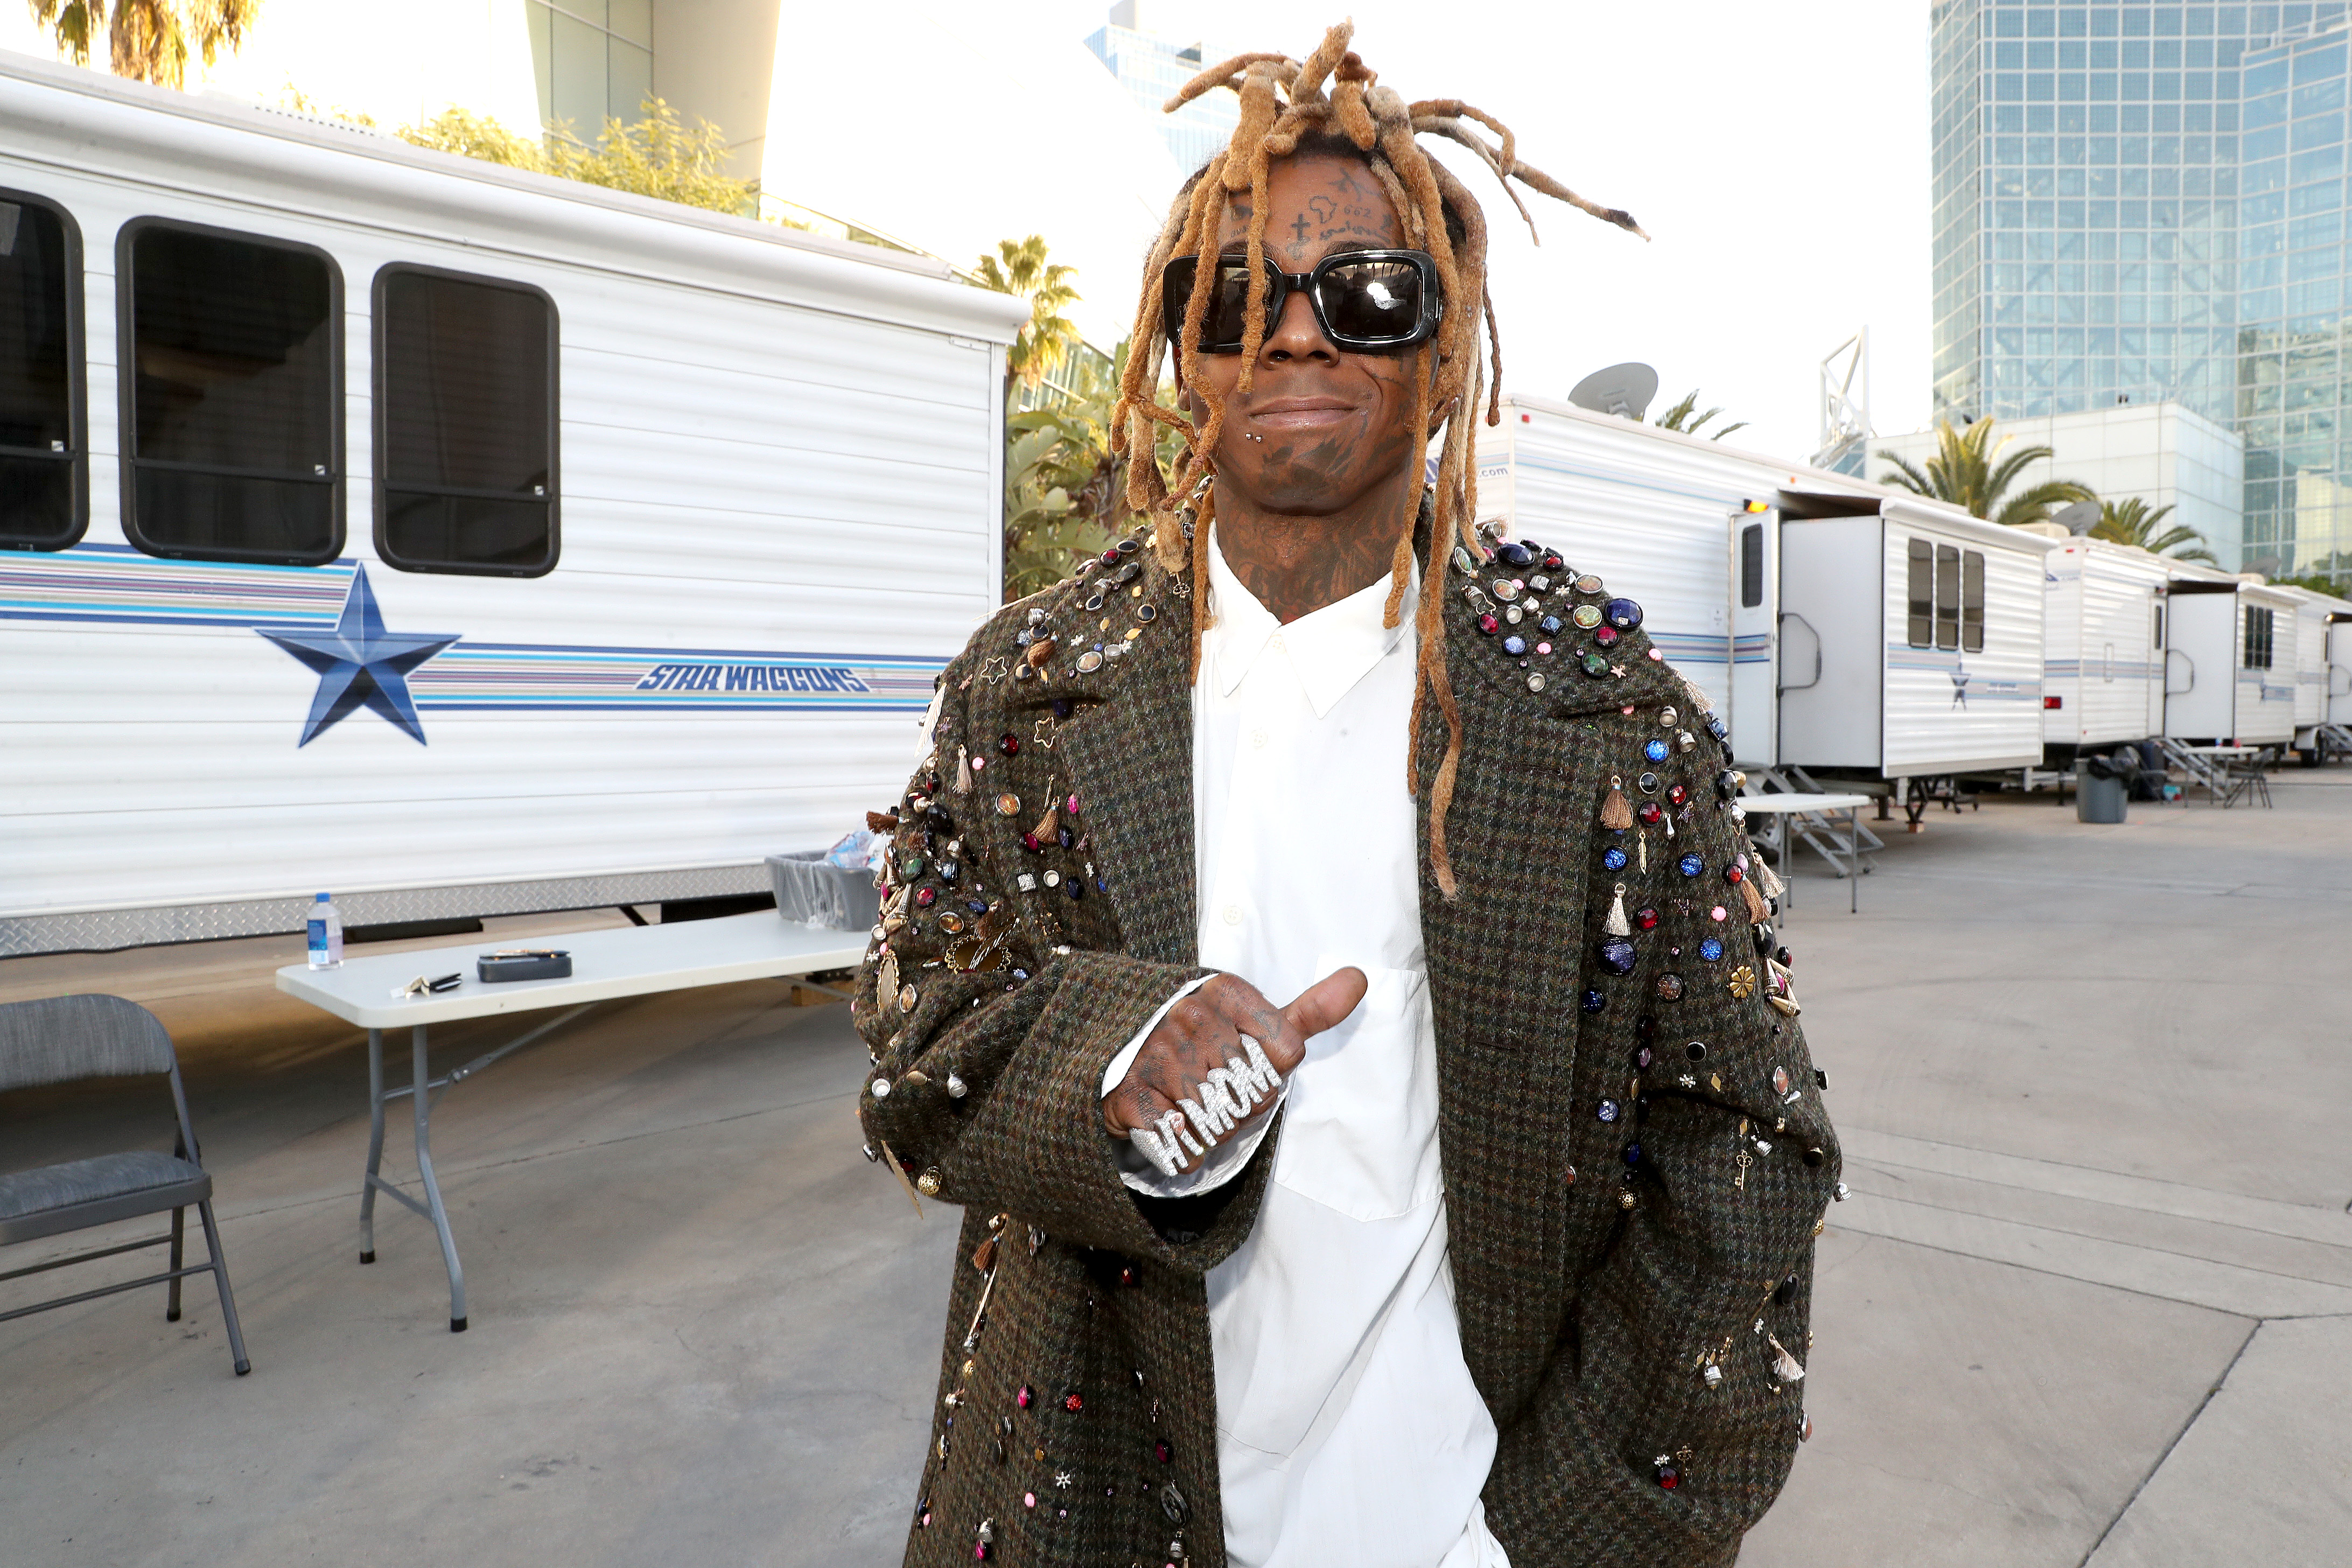 Teyana Taylor Gifts Lil Wayne “Rose In Harlem” Air Jordan 1s